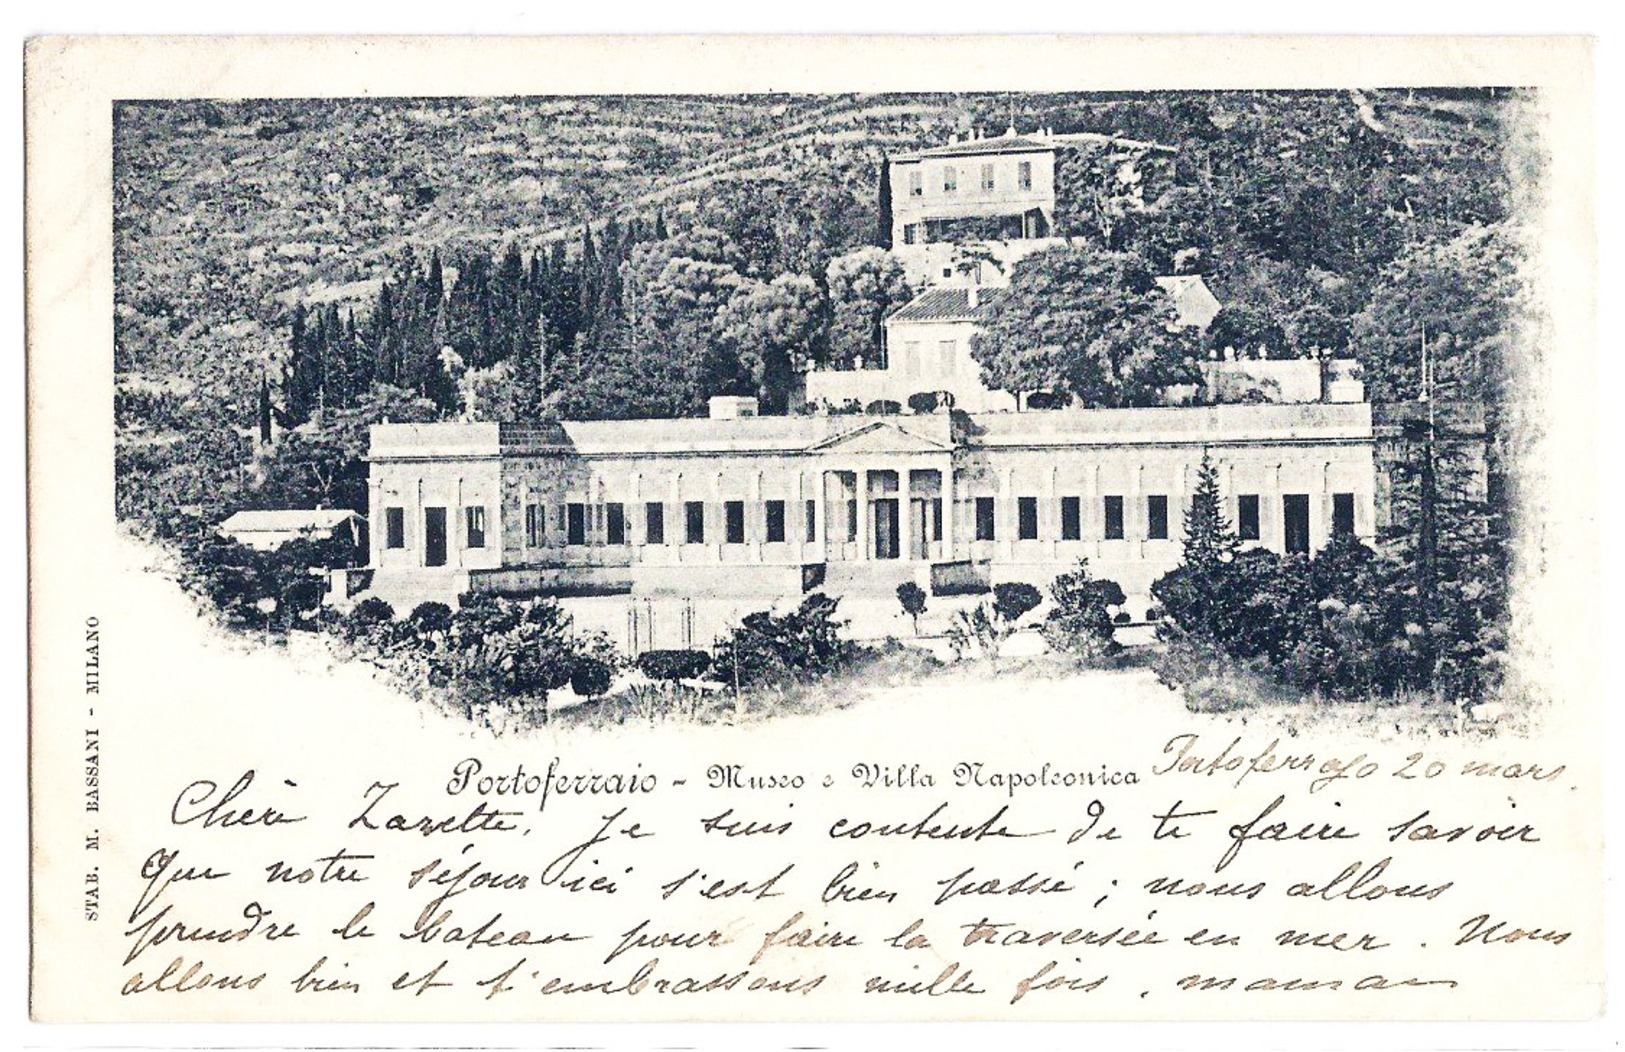 Isola D'Elba (Livorno) -  Portoferraio - Museo - Villa Napoleonica. 1900 - Livorno